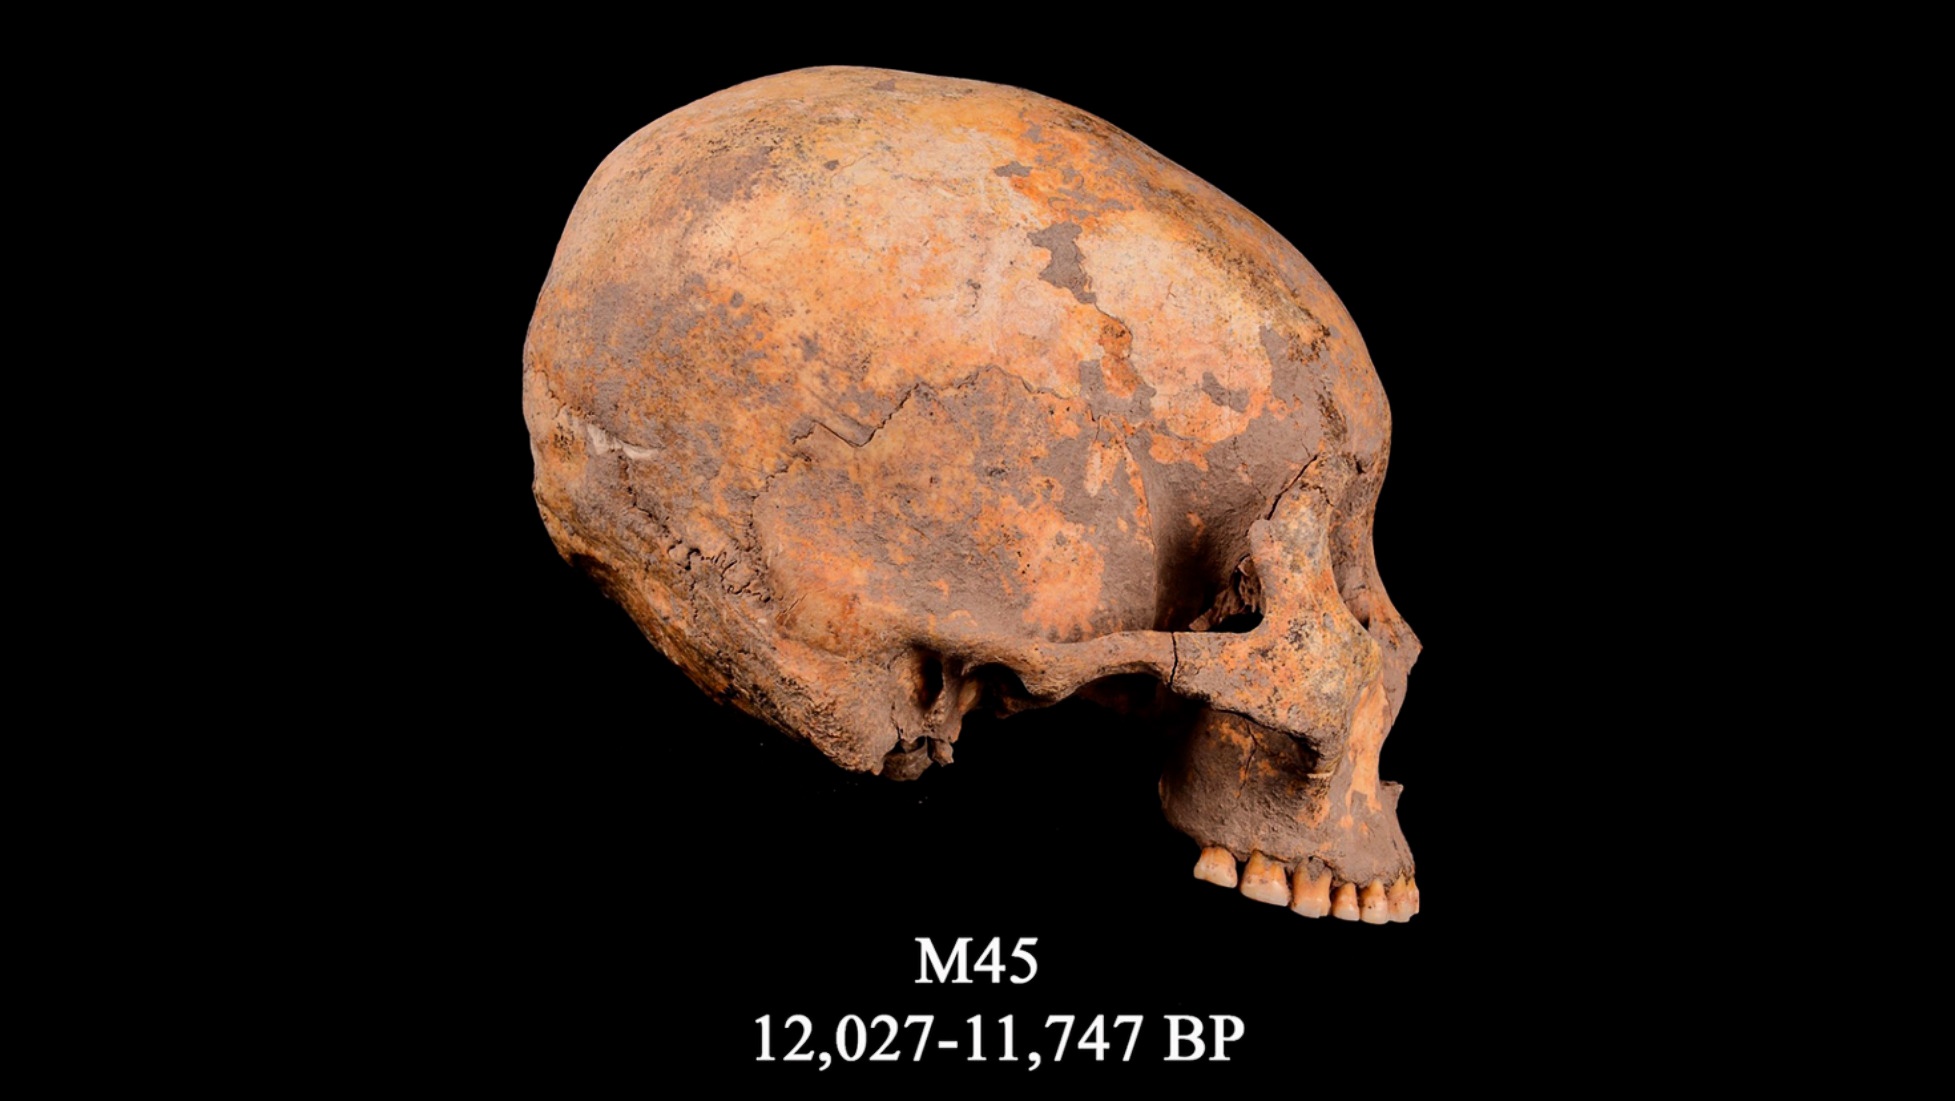 M45 તરીકે ઓળખાતી ખોપરી, રેકોર્ડમાં માથામાં ફેરફારનો સૌથી પહેલો જાણીતો કેસ. તે લગભગ 12,000 વર્ષ પહેલાંની છે.